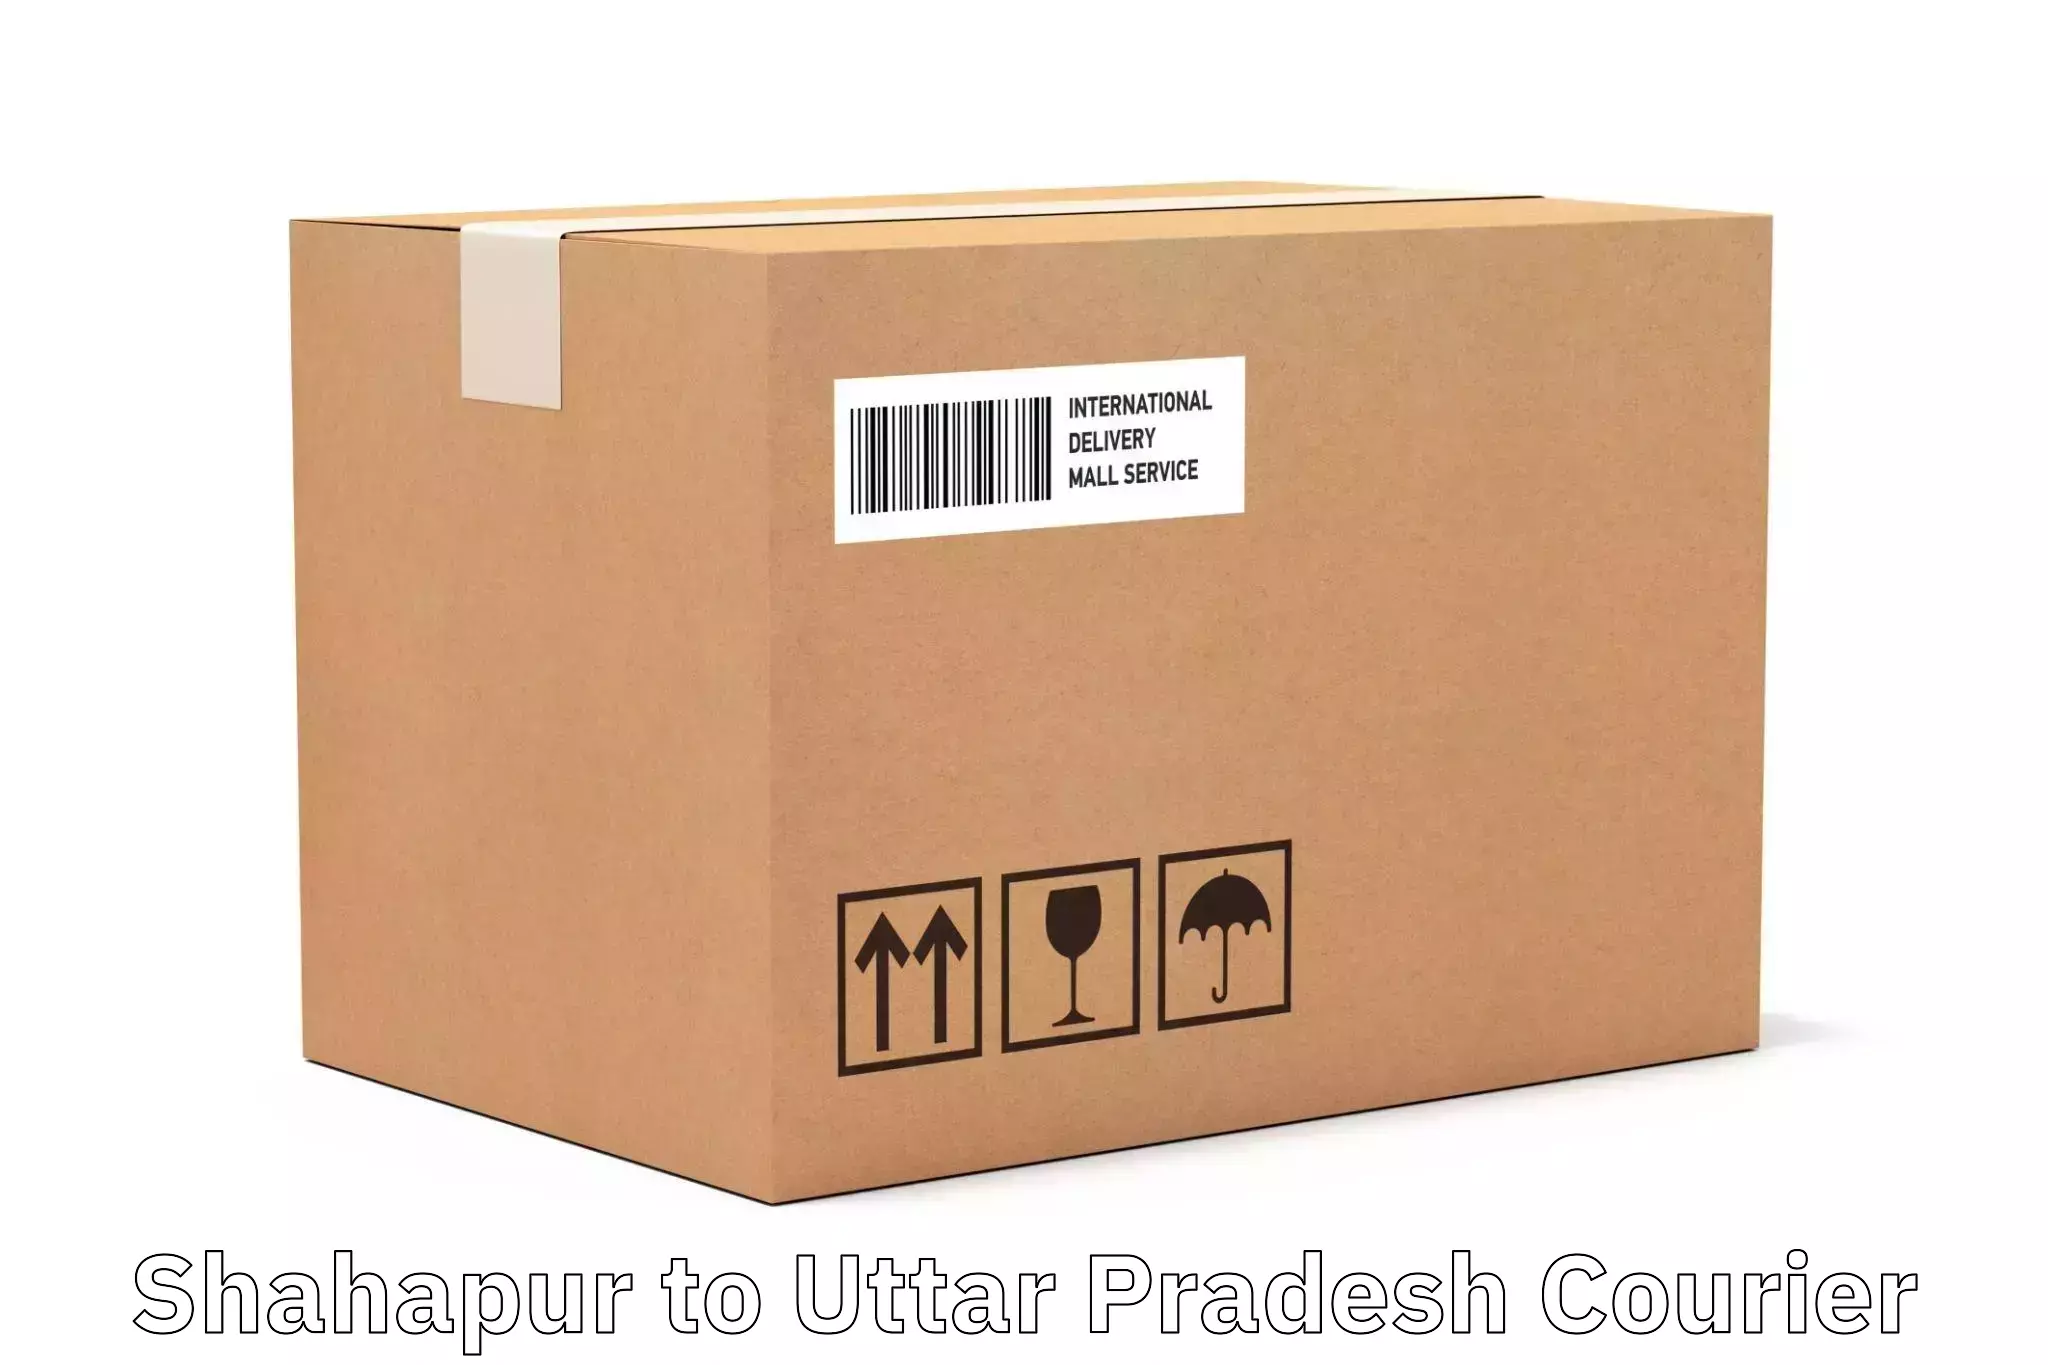 Smart parcel solutions in Shahapur to Saifai